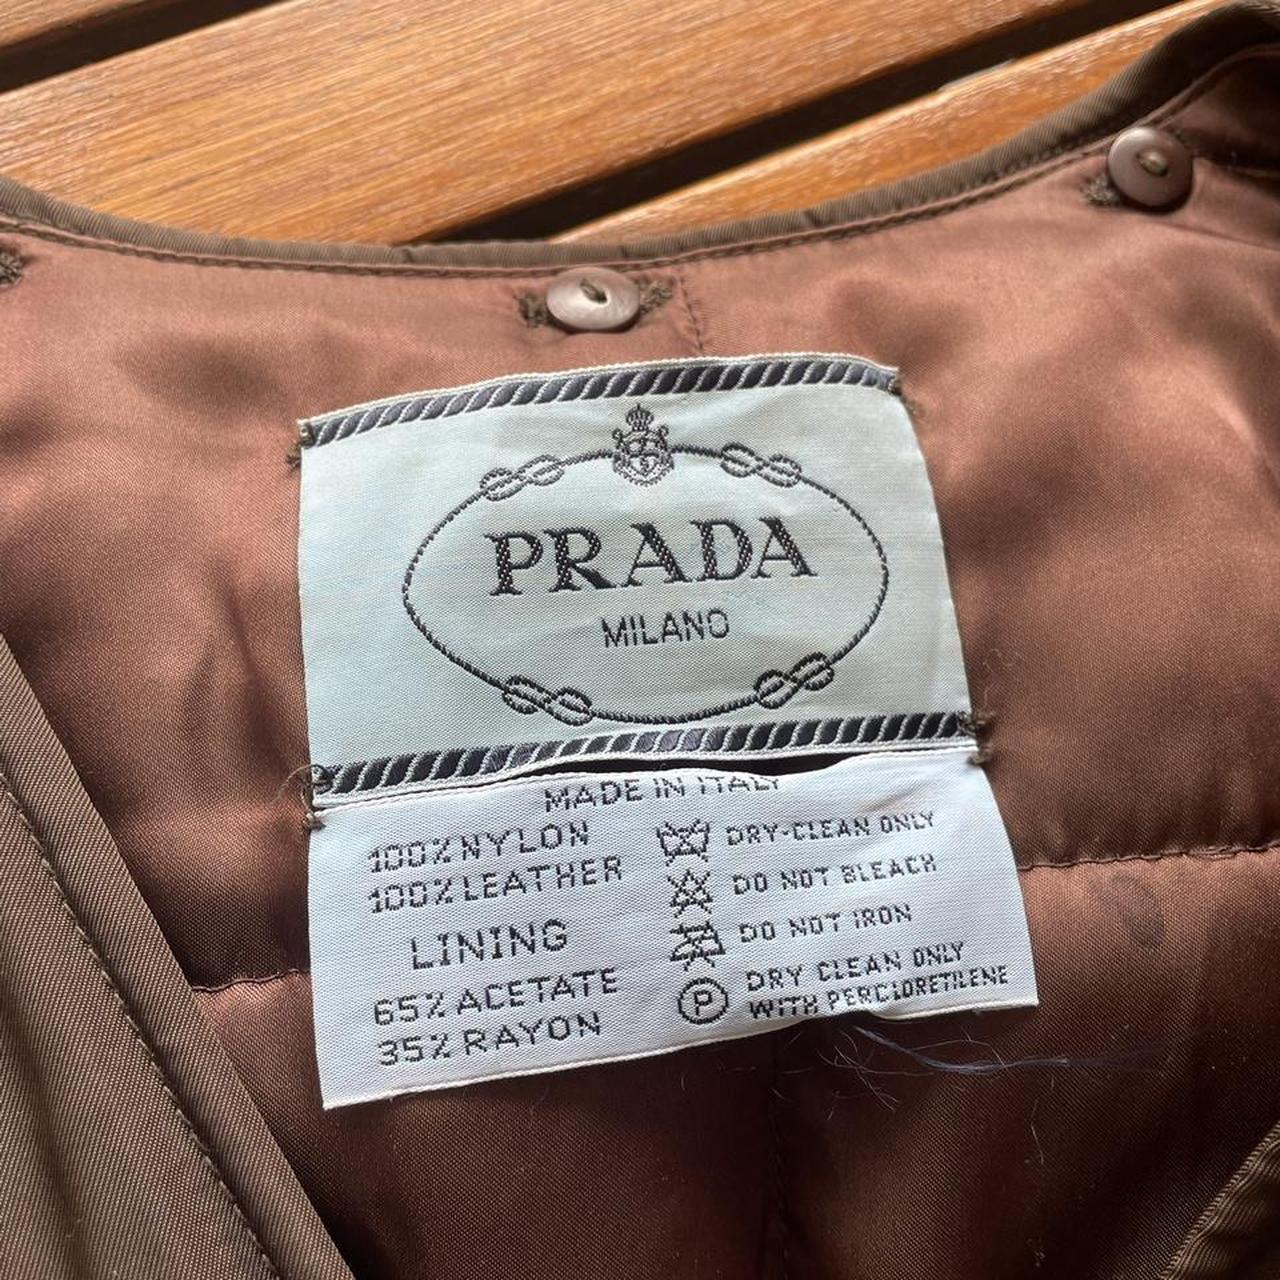 Prada gilet Prada waist coat Prada hunters... - Depop